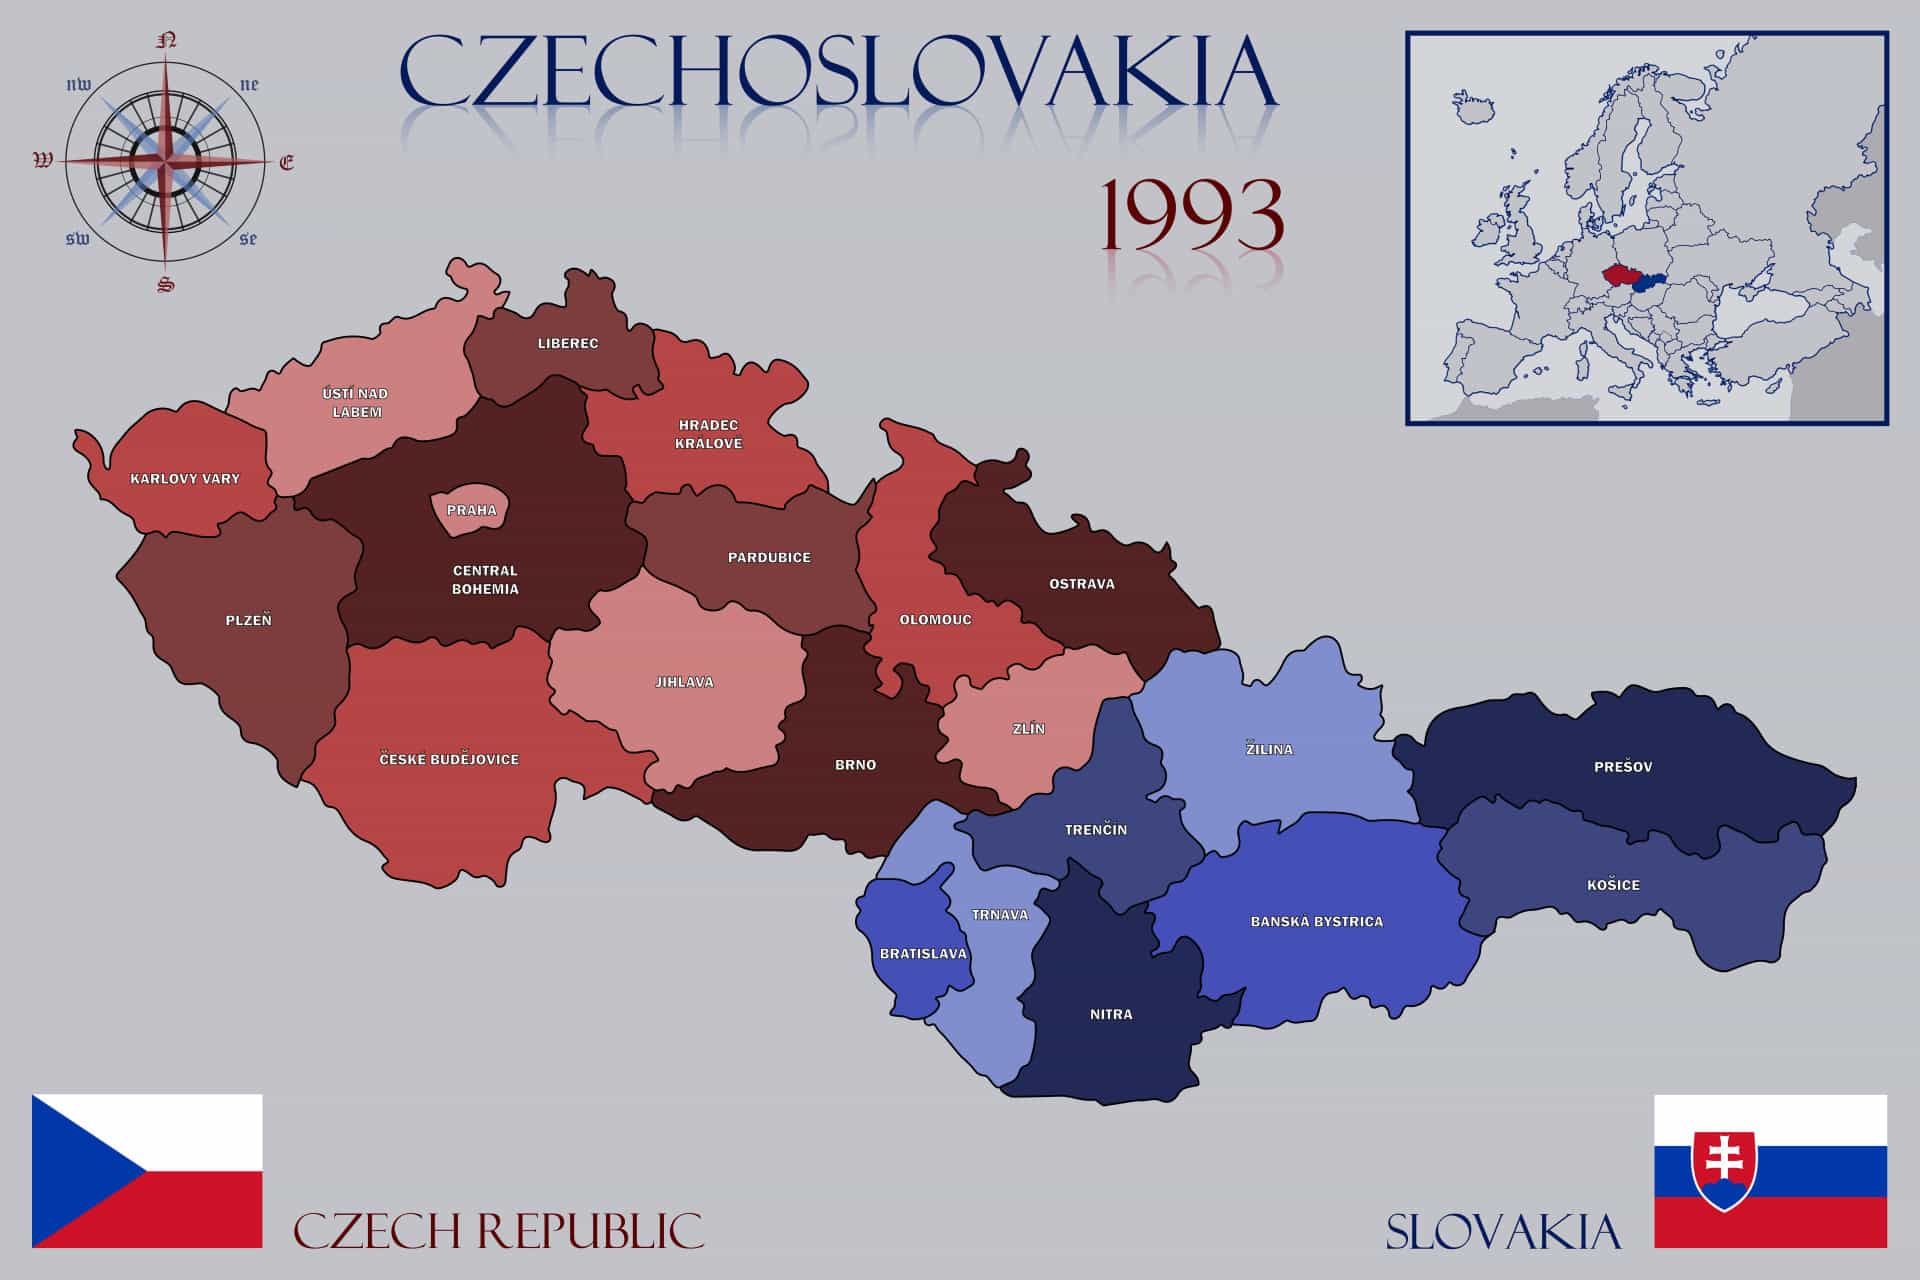 Республика чехословакия. В 1993 году Чехословакия разделилась на Чехию и Словакию. Распад Чехословакии карта. Разделение Чехословакии на Чехию и Словакию. 1993 Г. распад Чехословакии на Чехию и Словакию.